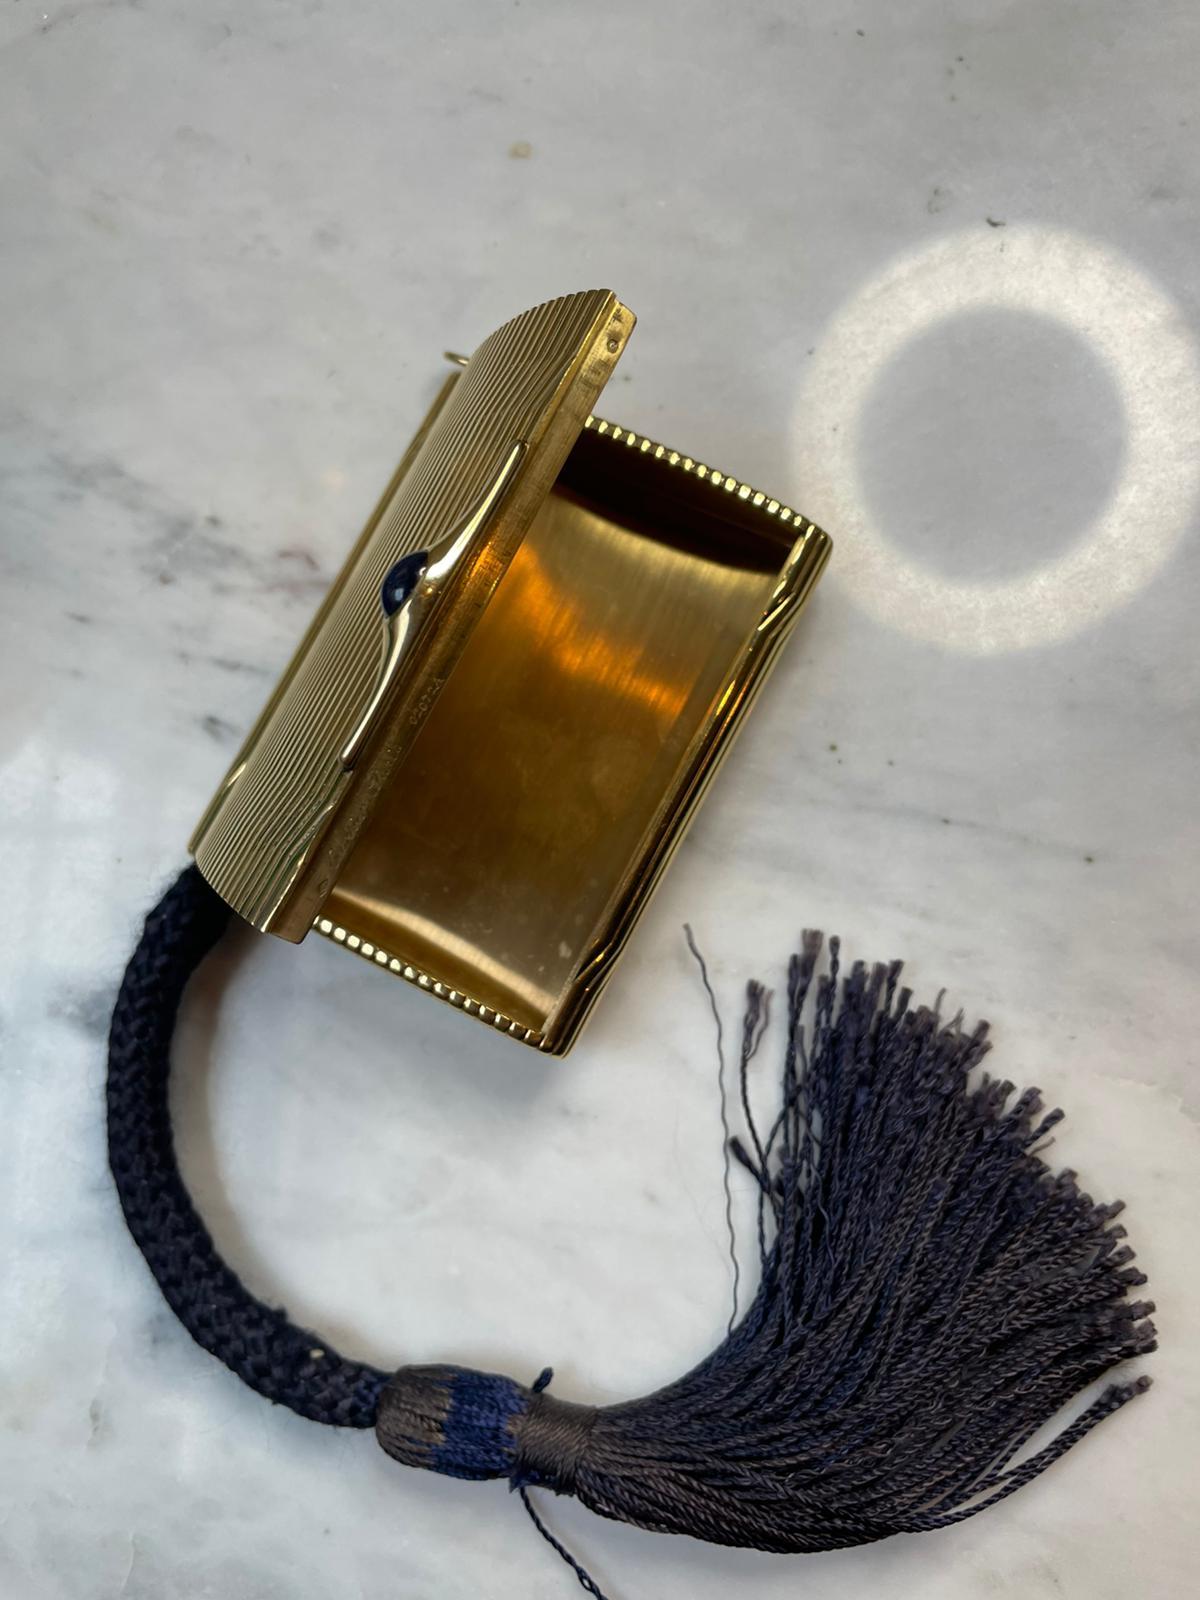 Eine mit Saphiren besetzte Zigaretten- und Feuerzeug-Goldtasche von Cartier, um 1930.

Ursprünglich aus Paris, um 1930. Dieses seltene und ungewöhnliche Gehäuse ist mit einem Cabochon-Saphir als Daumenring besetzt,  mit einem sehr typischen Design